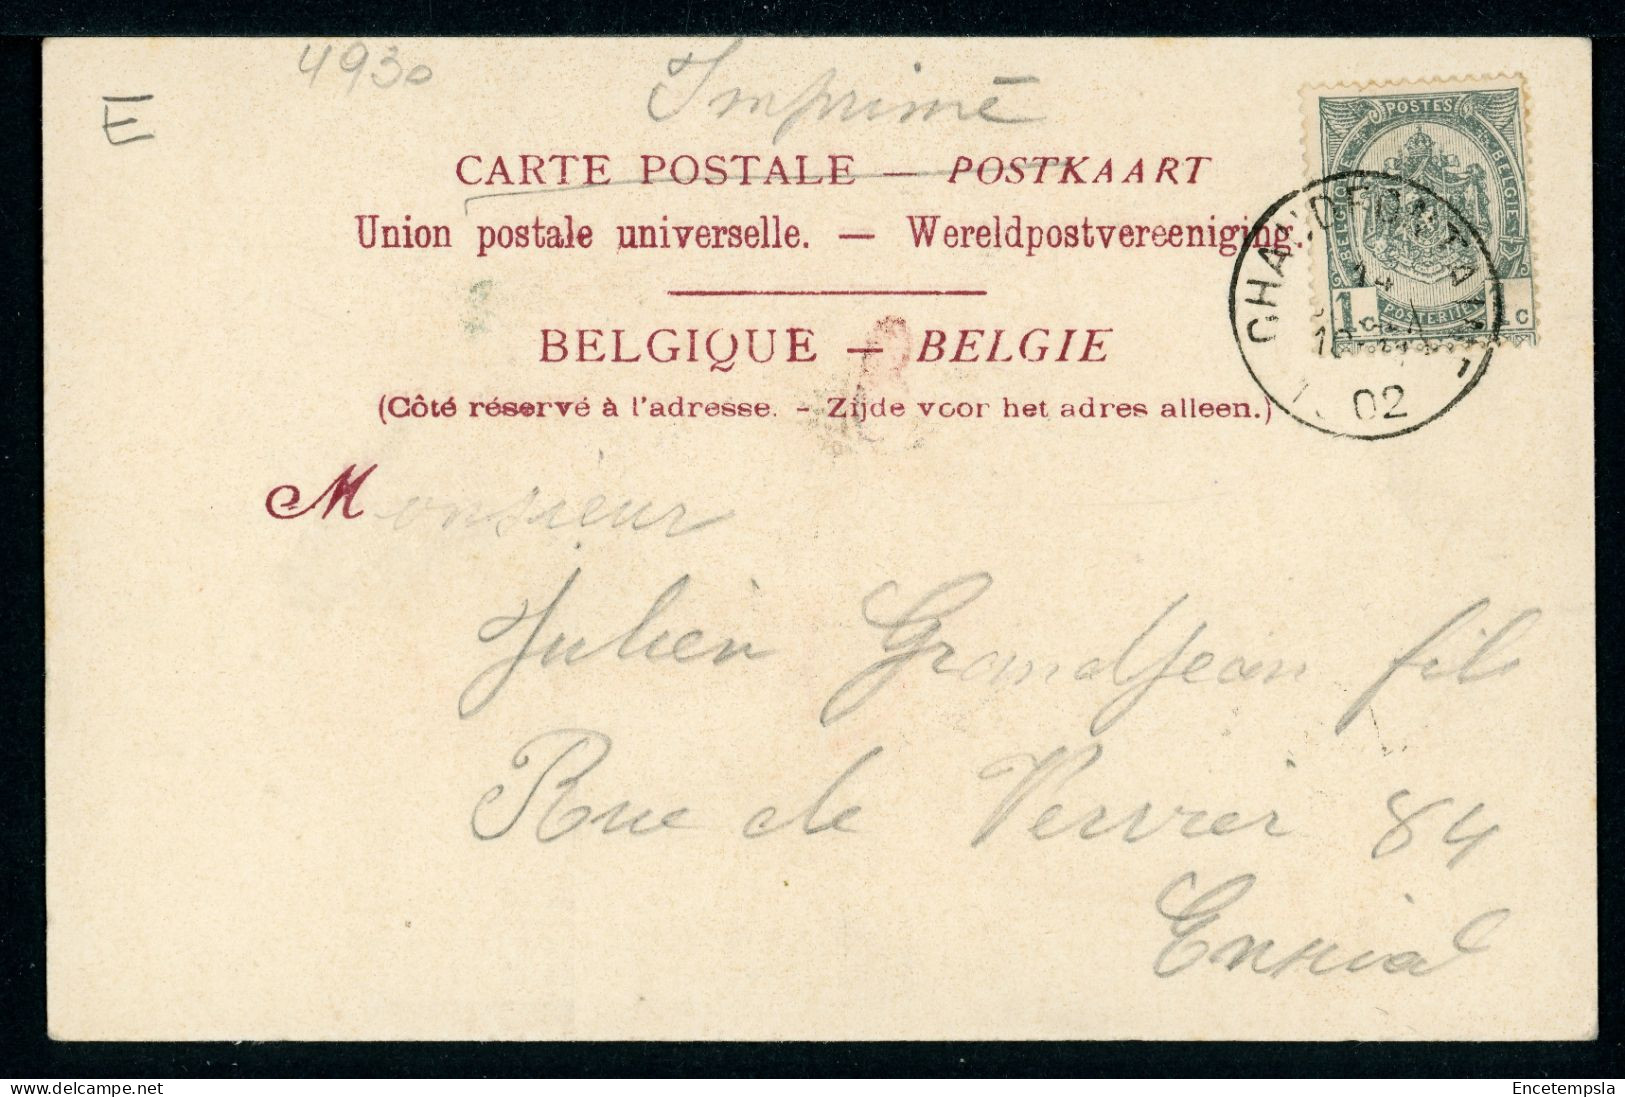 CPA - Carte Postale - Belgique - Chaudfontaine - Le Moulin (CP24226OK) - Chaudfontaine